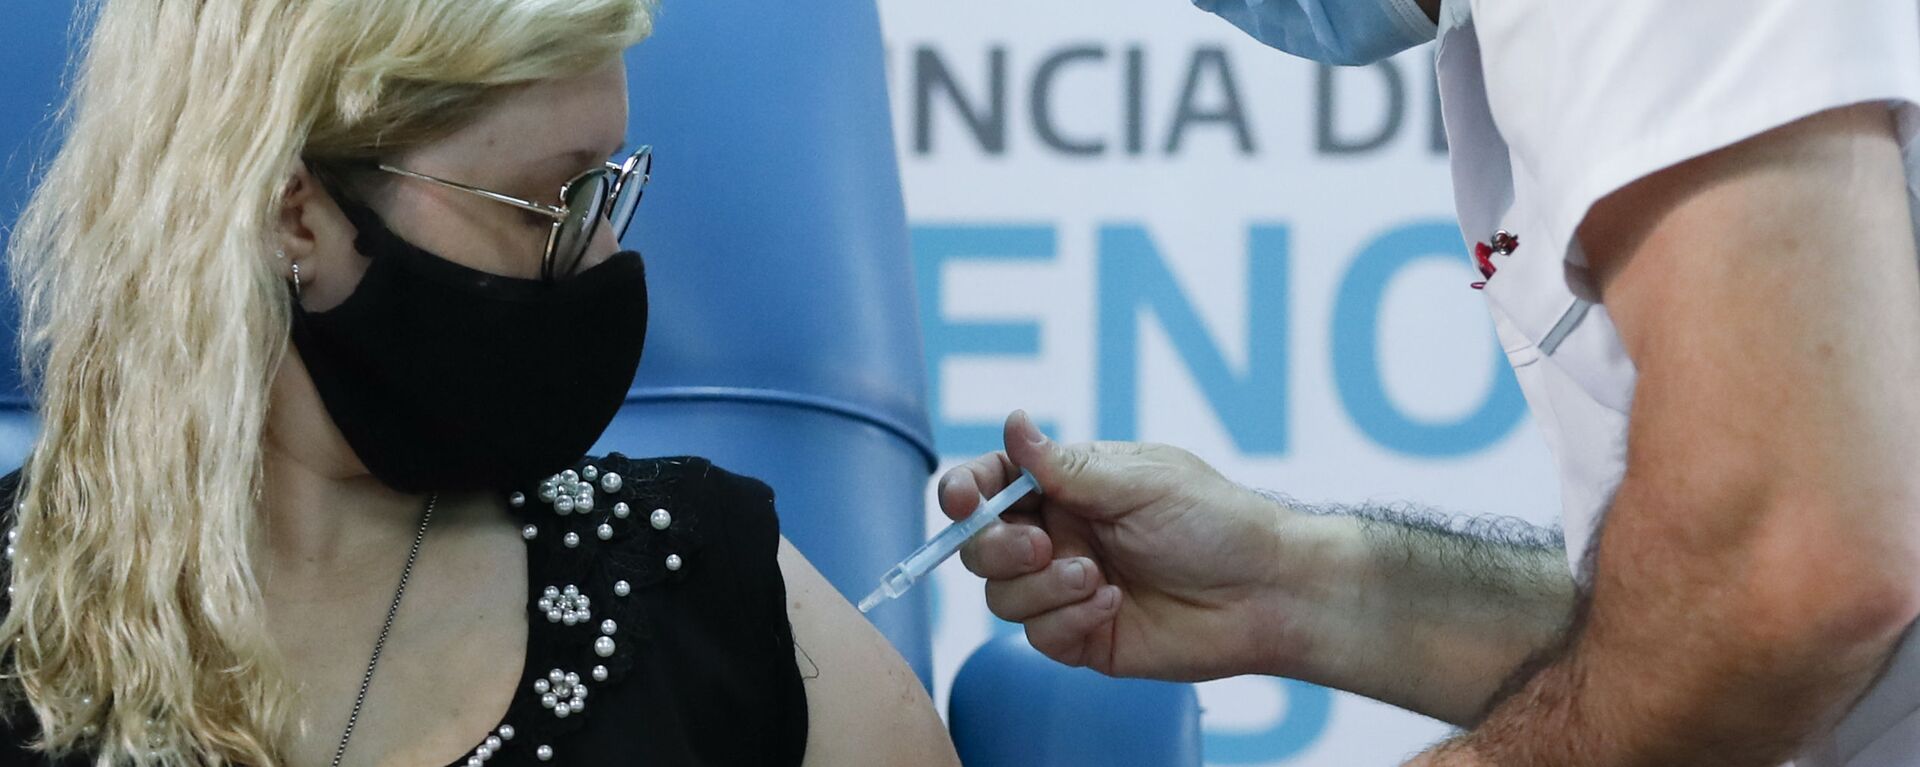 Una enfermera argentina recibe la vacuna Sputnik V durante la primera jornada de vacunación - Sputnik Mundo, 1920, 09.02.2021